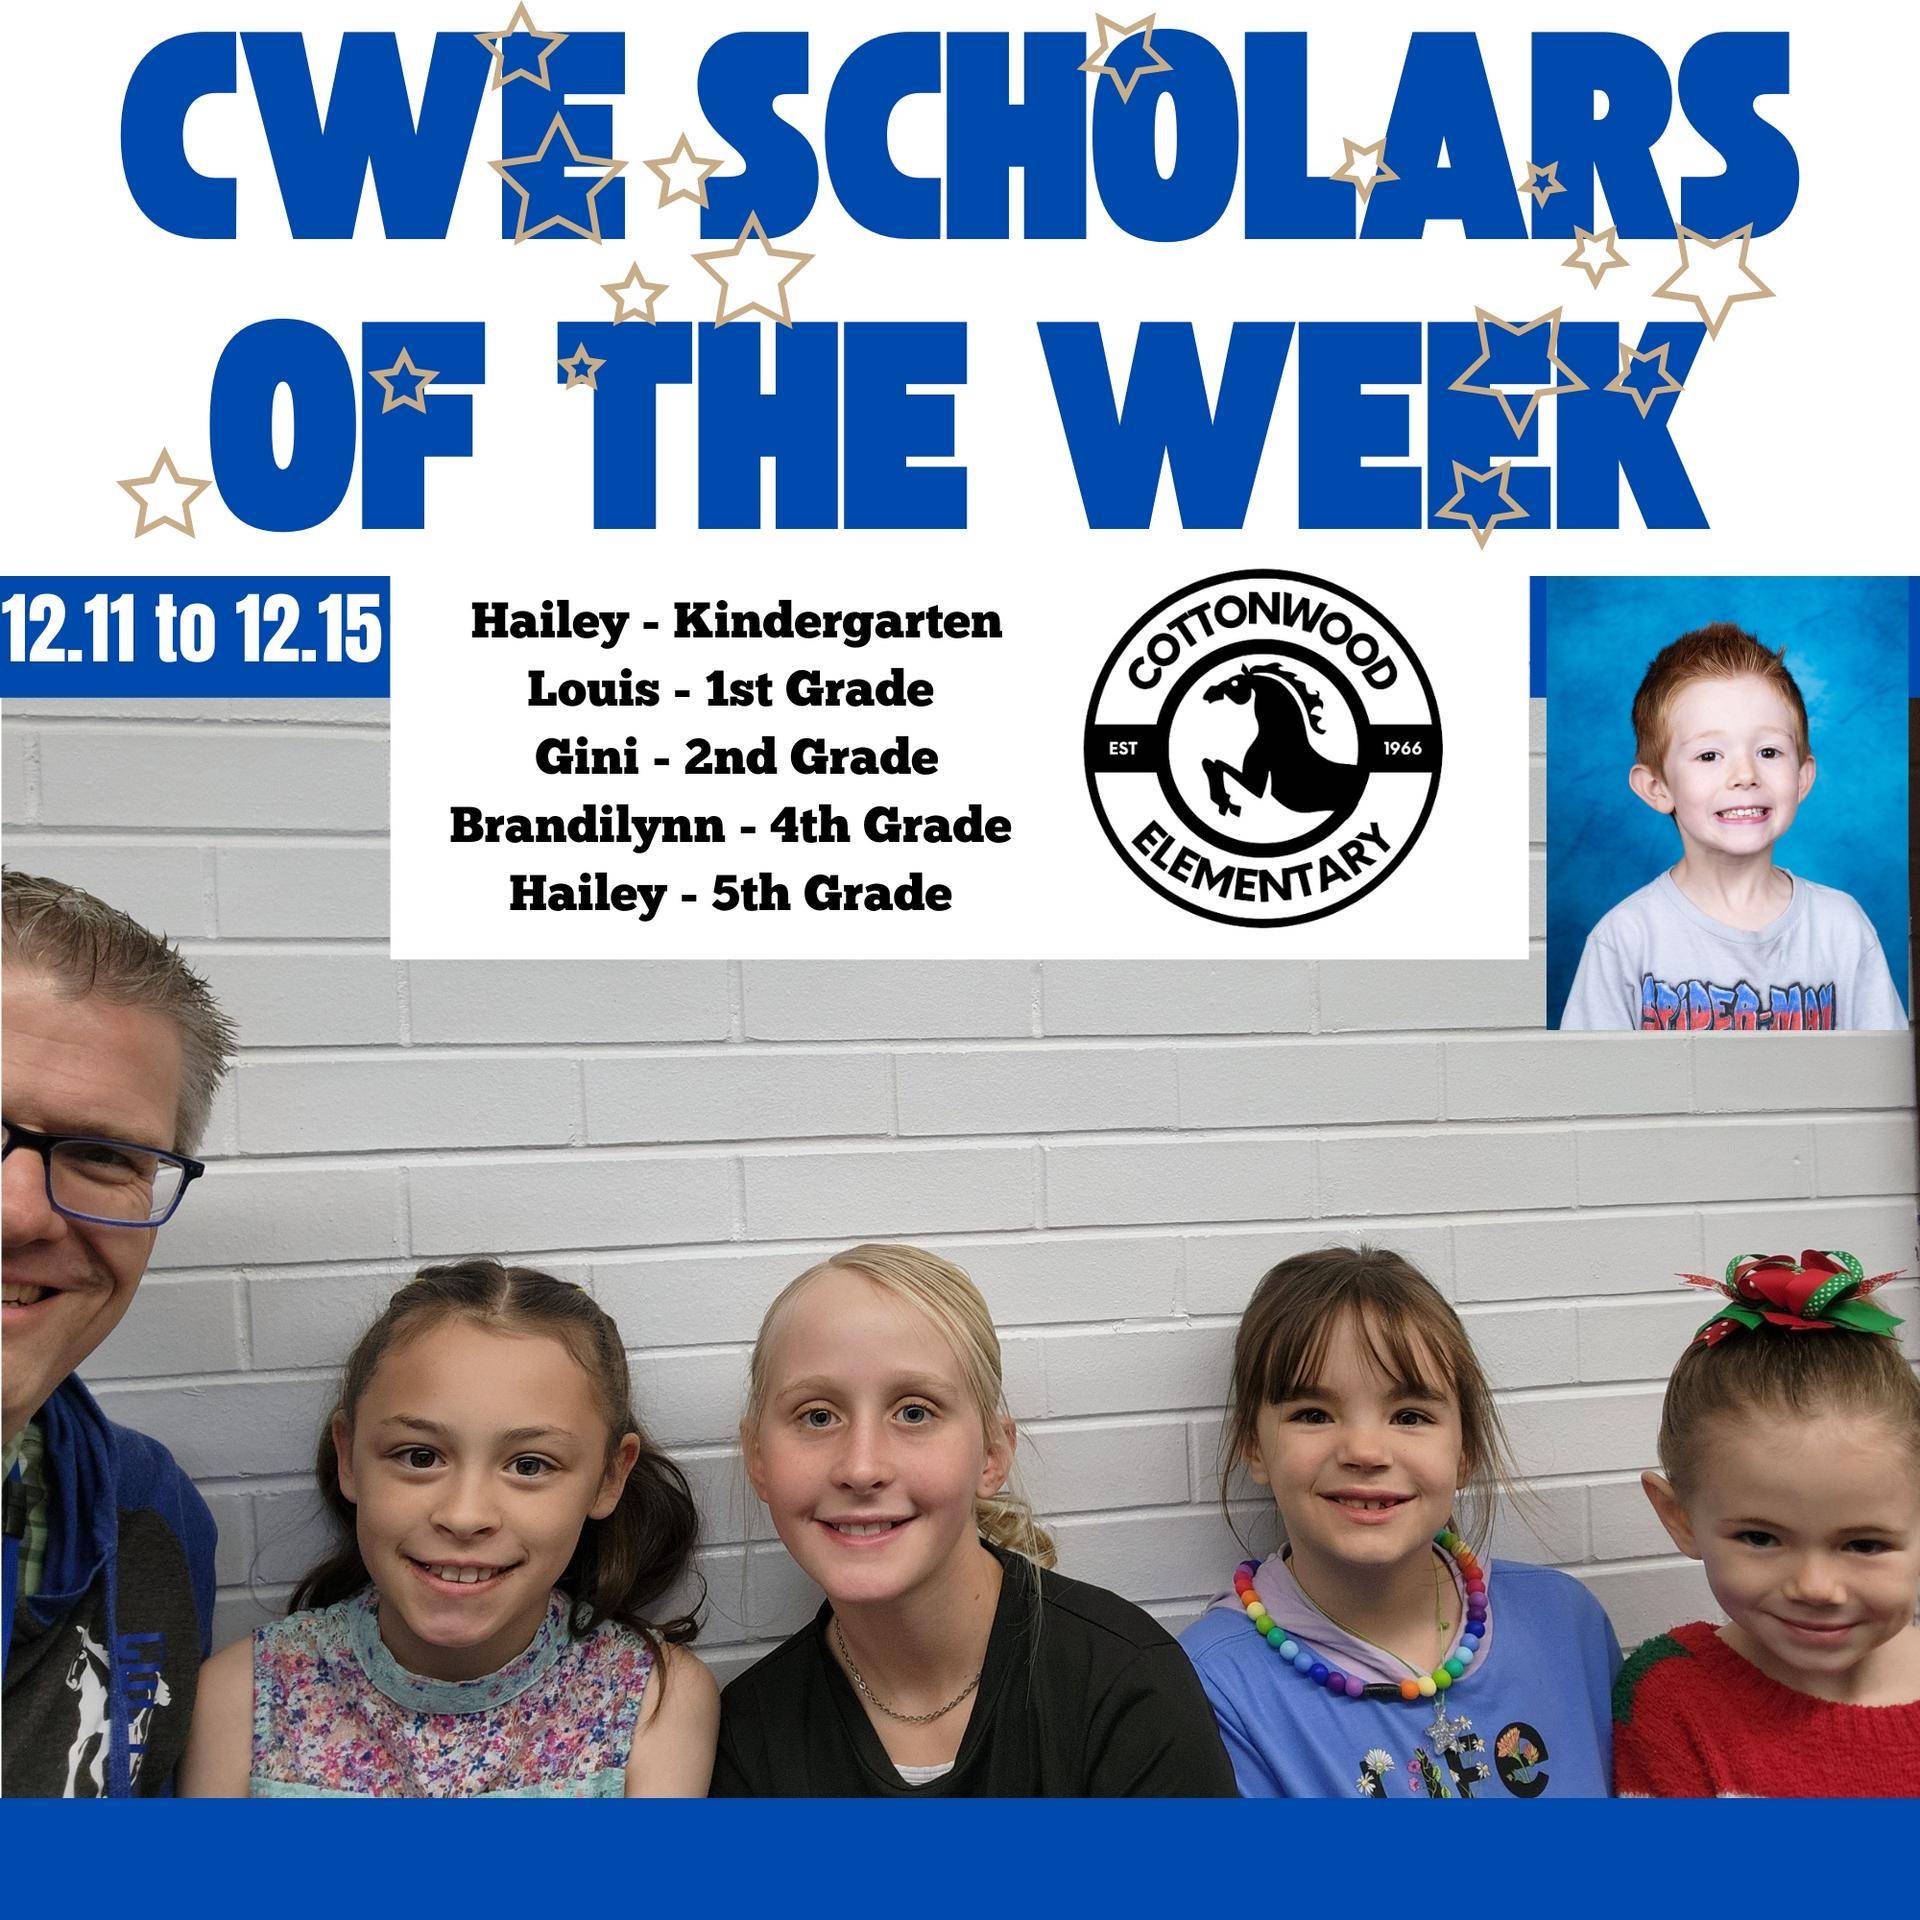 CWE-Scholars-of-the-Week-12.11-to-12.15.jpg